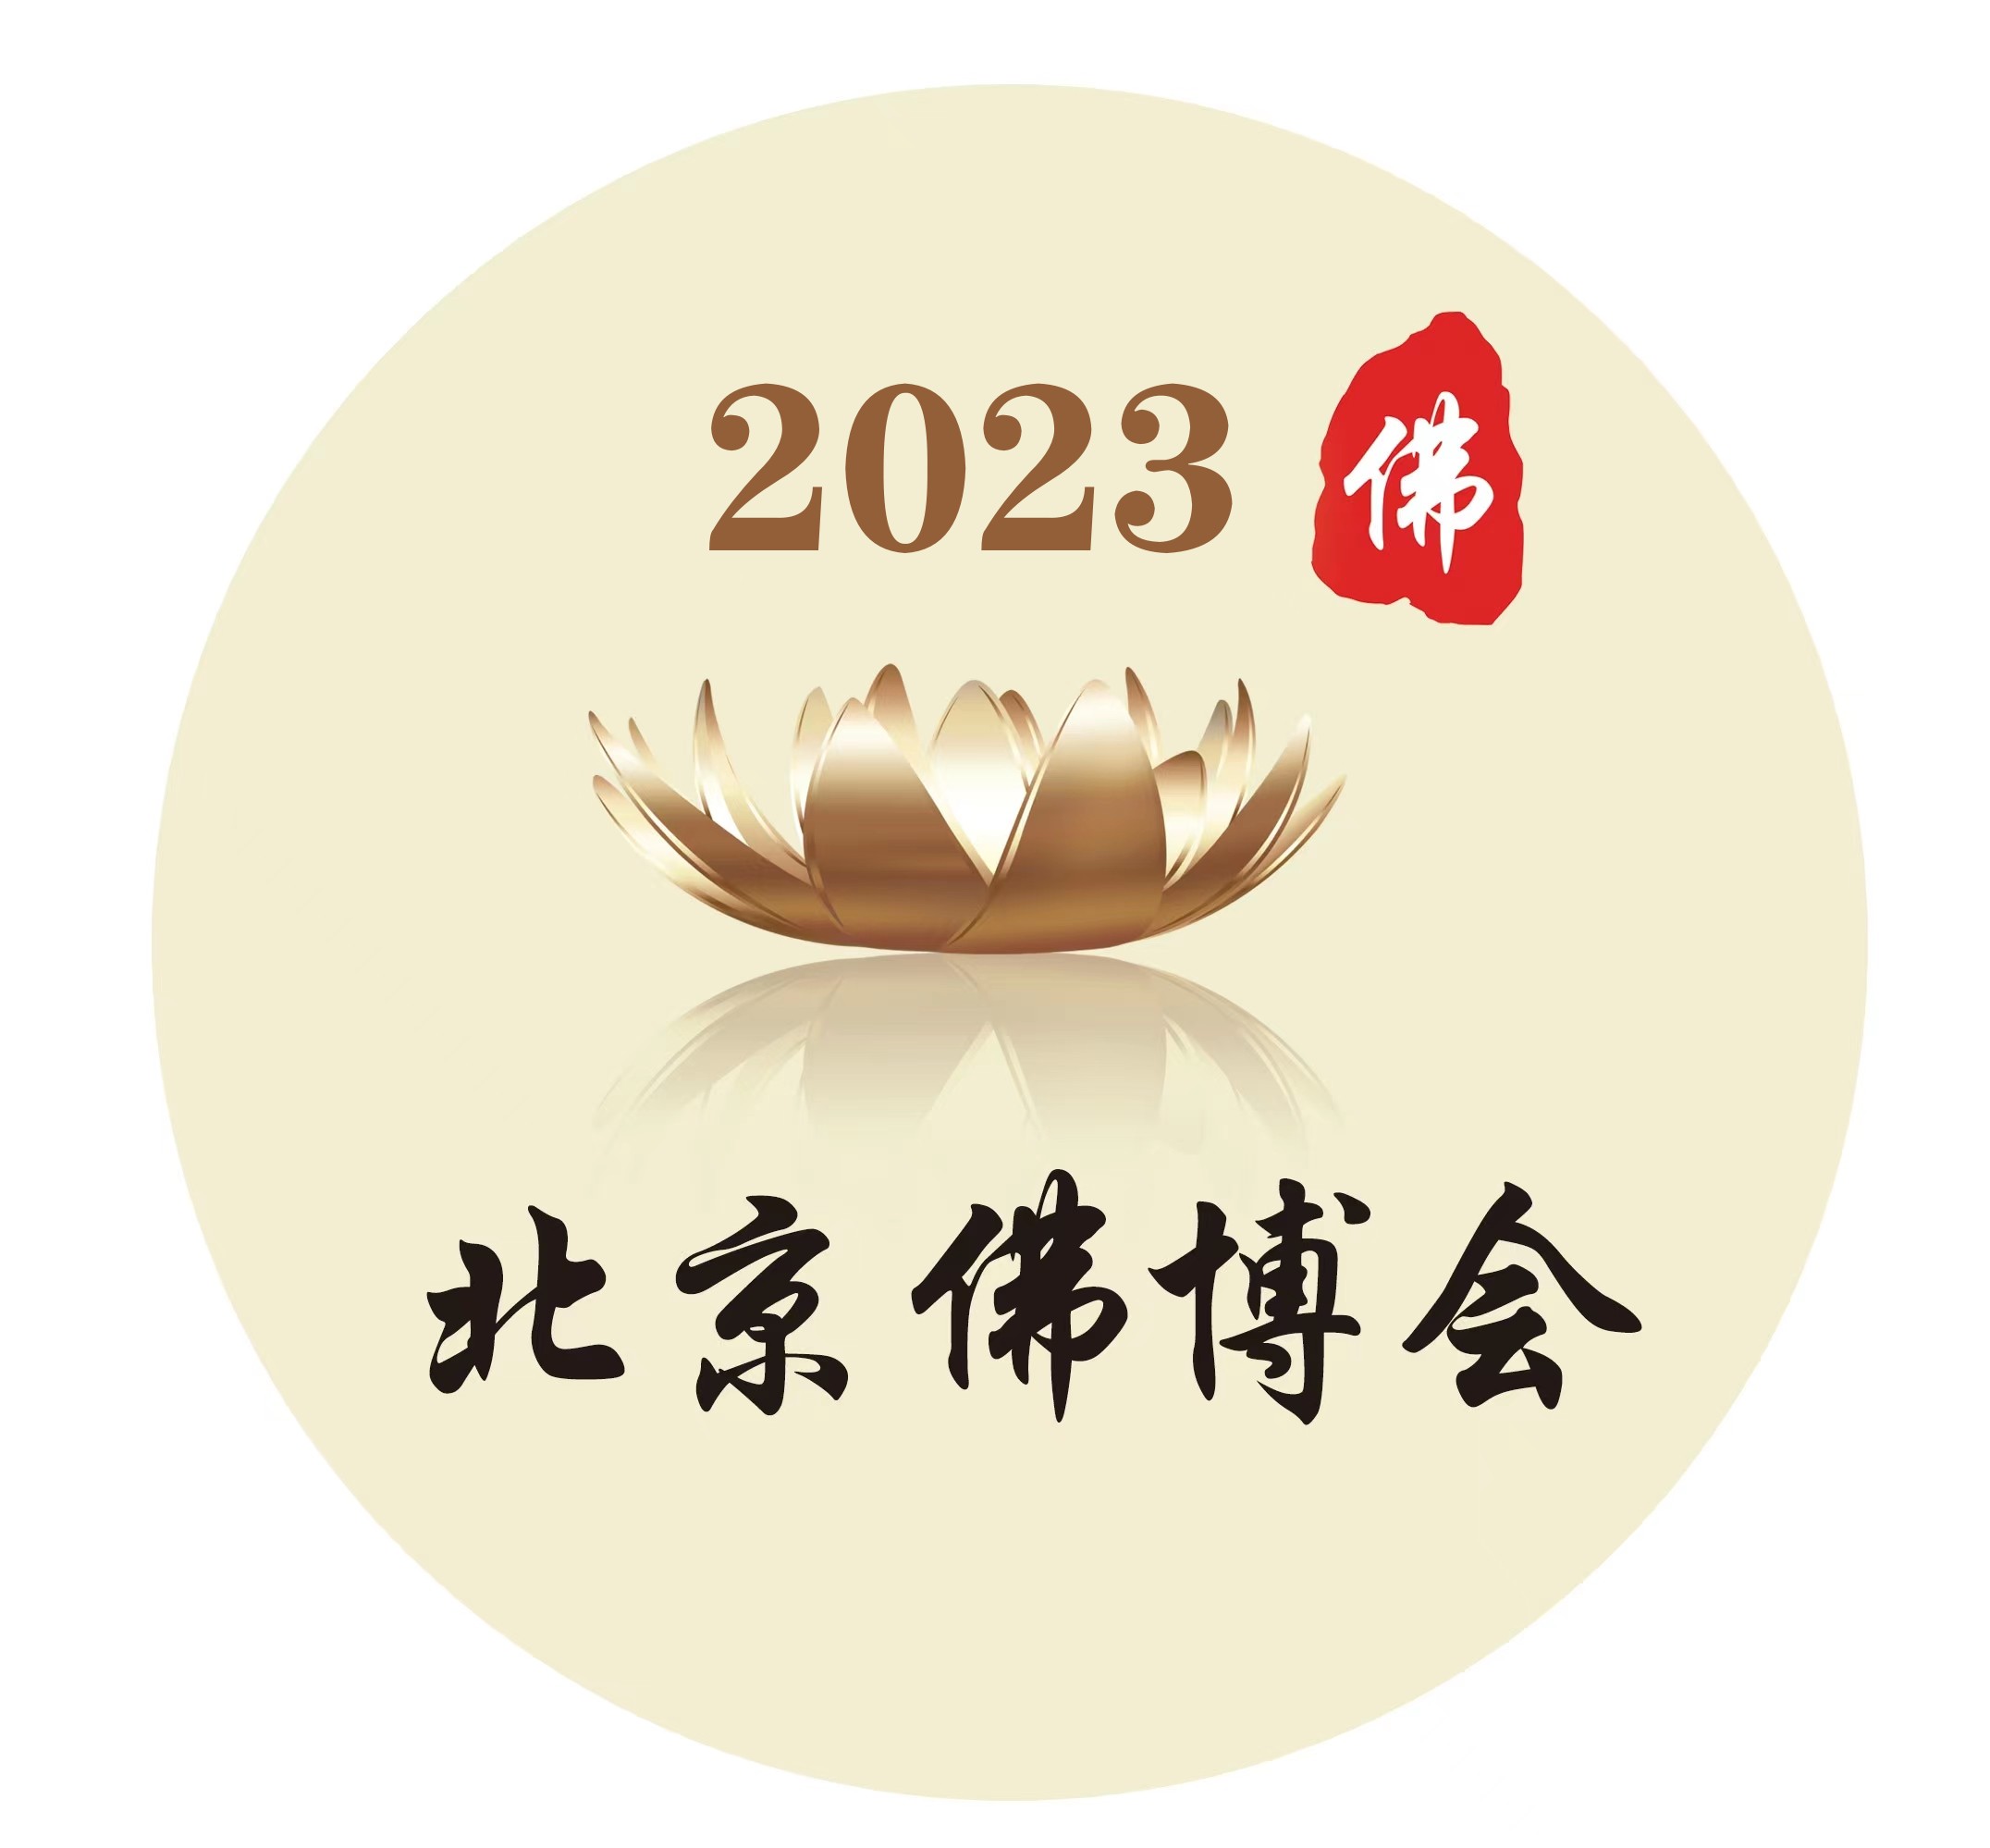 北京佛博会、北京素食文化节、沉香博览会批发